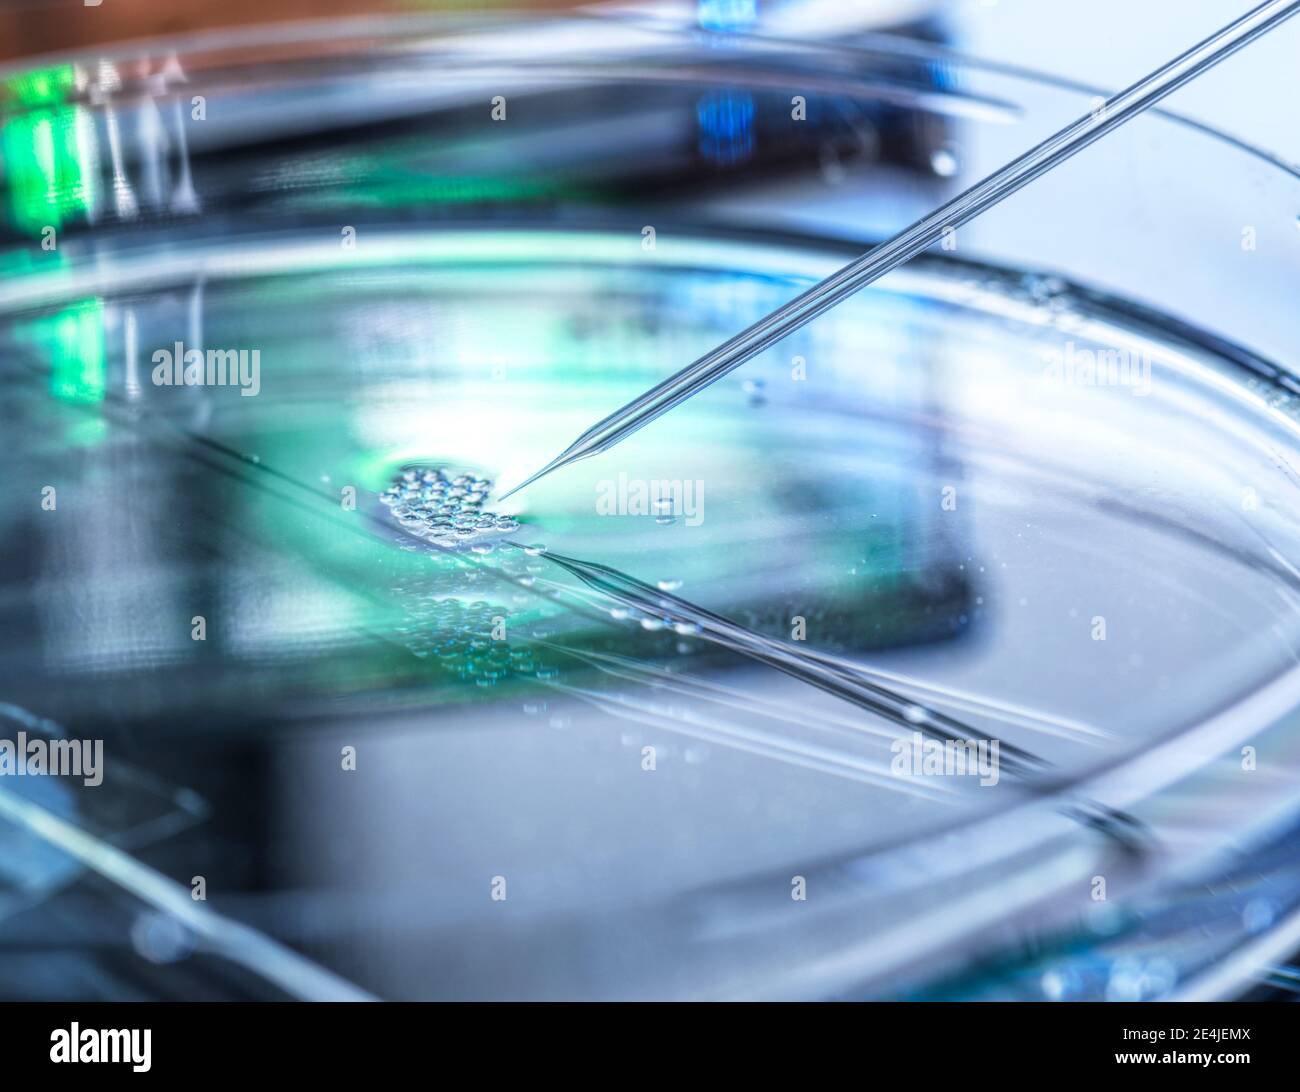 Se están llevando a cabo investigaciones científicas sobre la transferencia nuclear en varias células madre embrionarias utilizadas en la clonación y la modificación genética Foto de stock